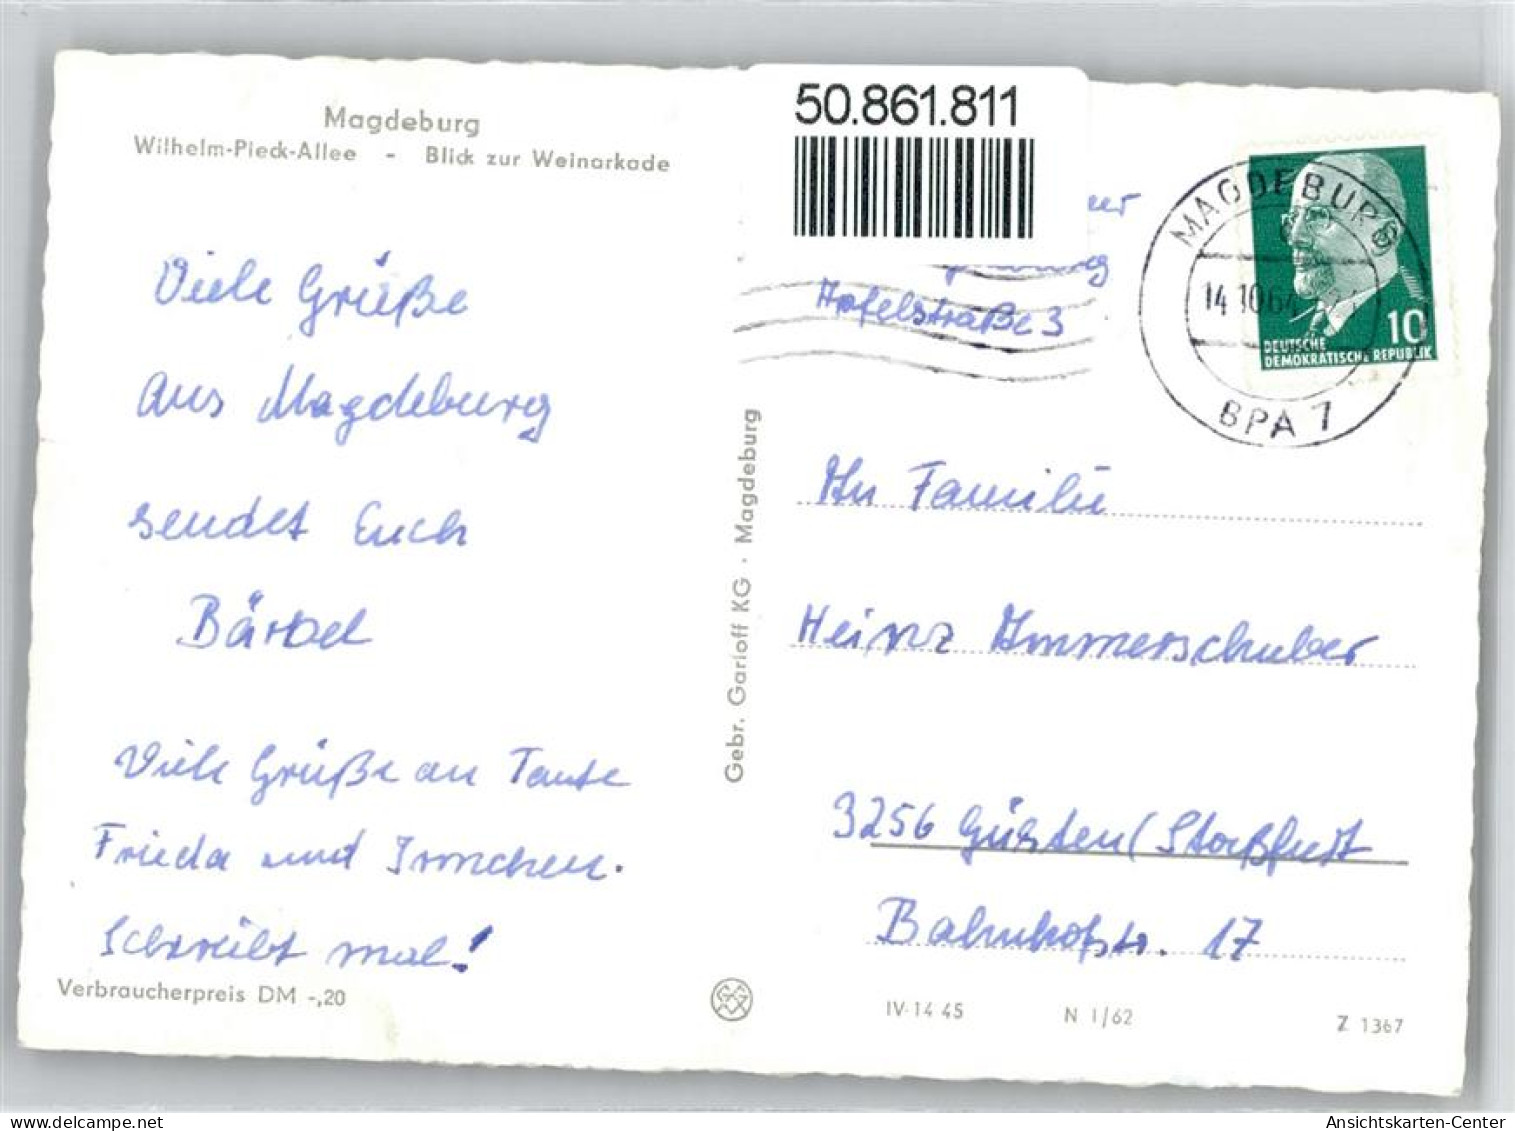 50861811 - Magdeburg - Magdeburg